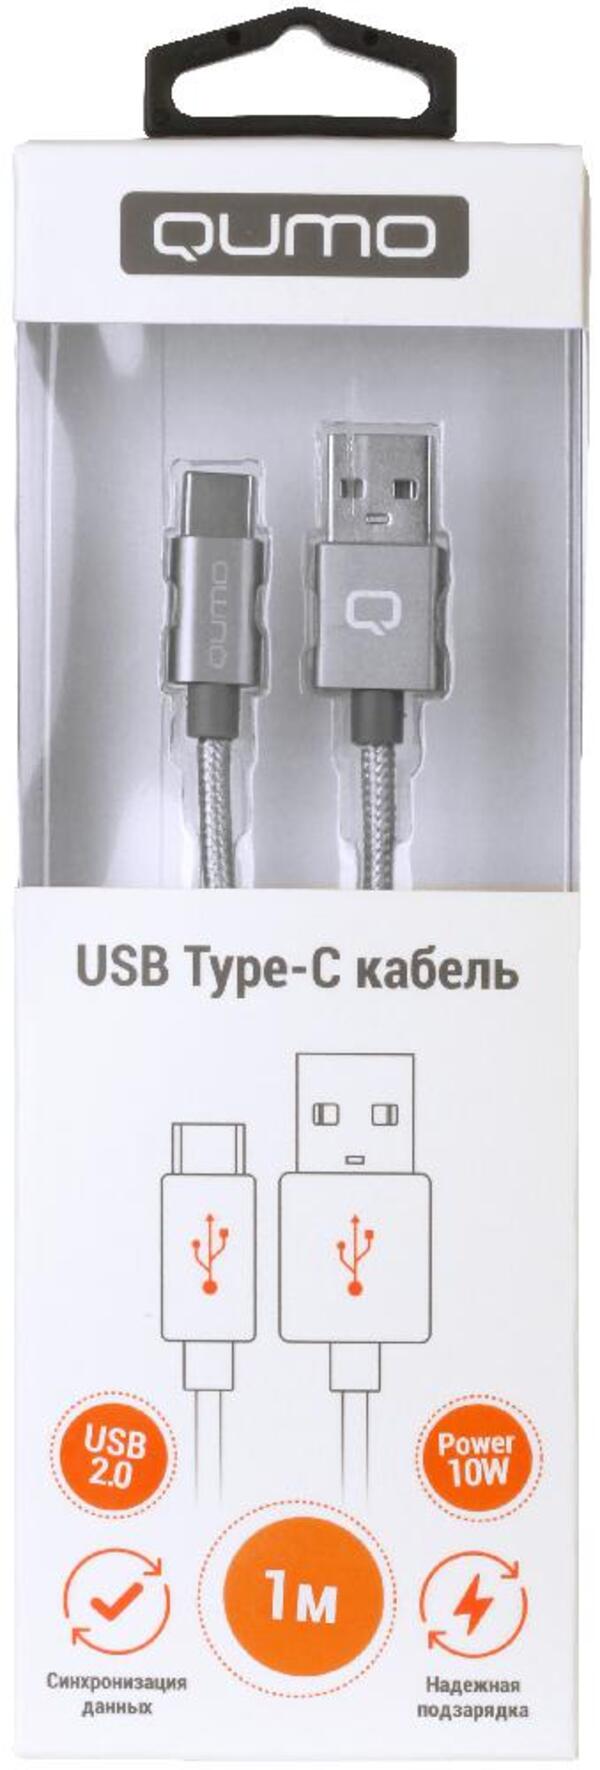 Кабель usb type-c - usb QUMO Qumo Type-С кабель 1 м серый